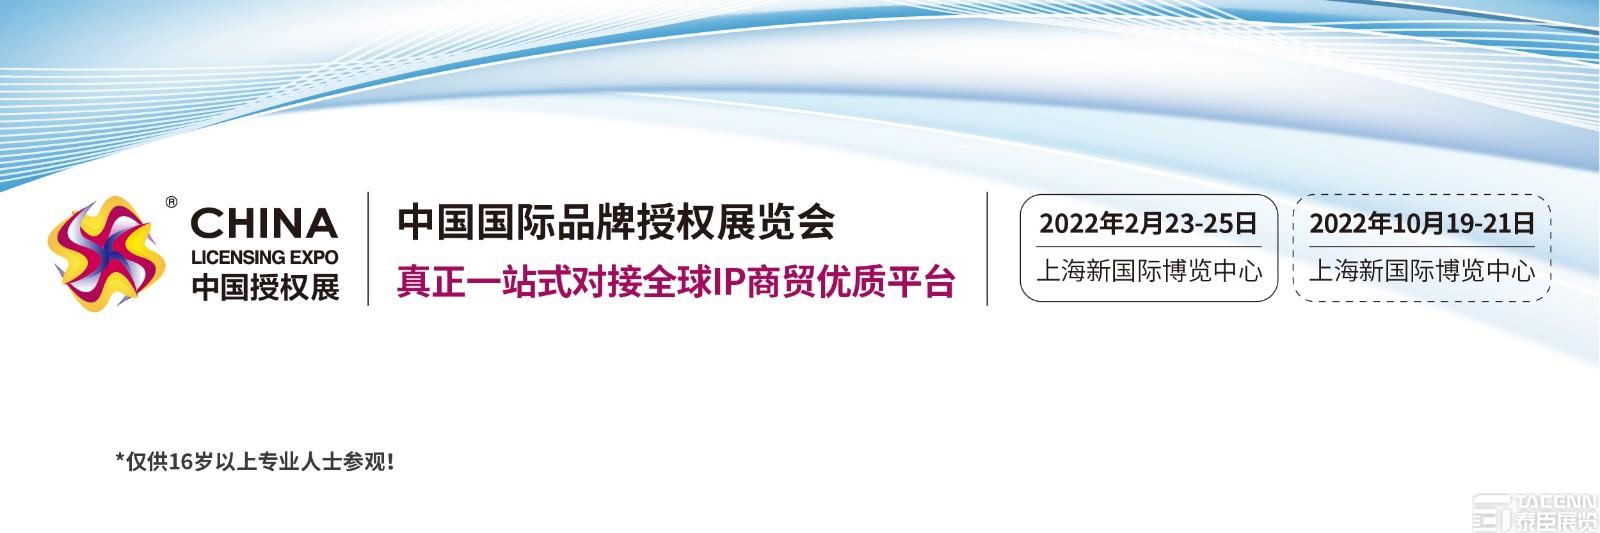 2022中国上海玩具品牌授权展